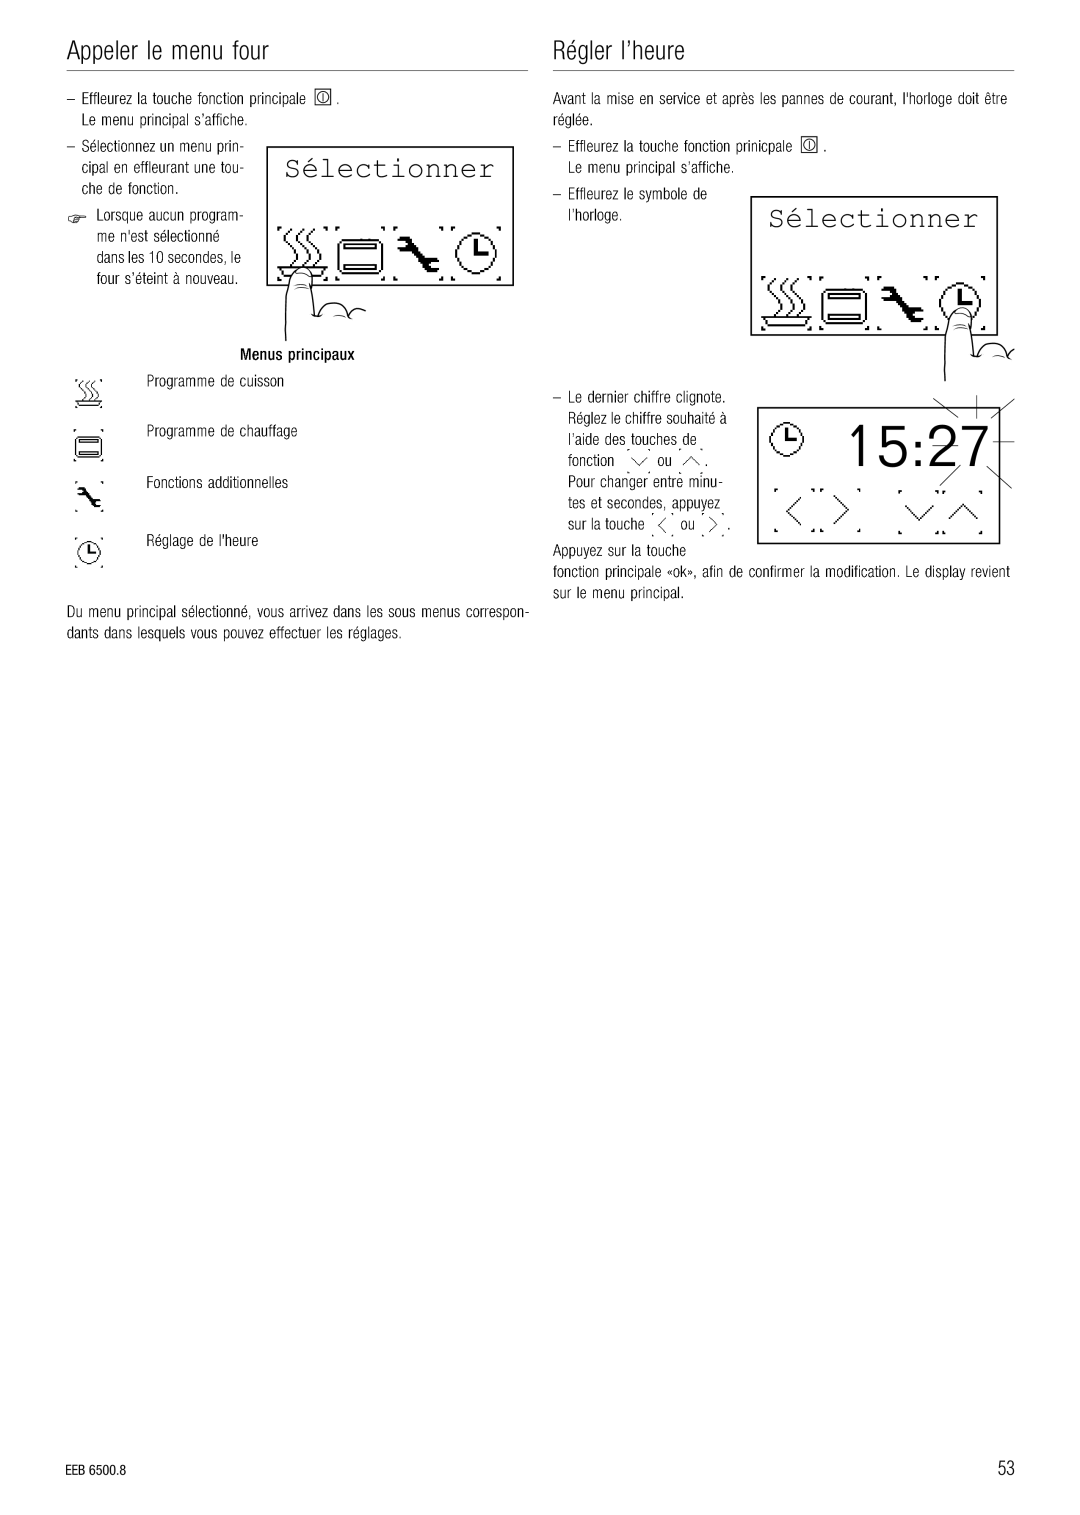 Kuppersbusch USA EEB 6500.8 installation manual 1527, Sélectionner, o¨ÖäÉê=äÛÜÉìêÉ, ééÉäÉê=äÉ=ãÉåì=Ñçìê 